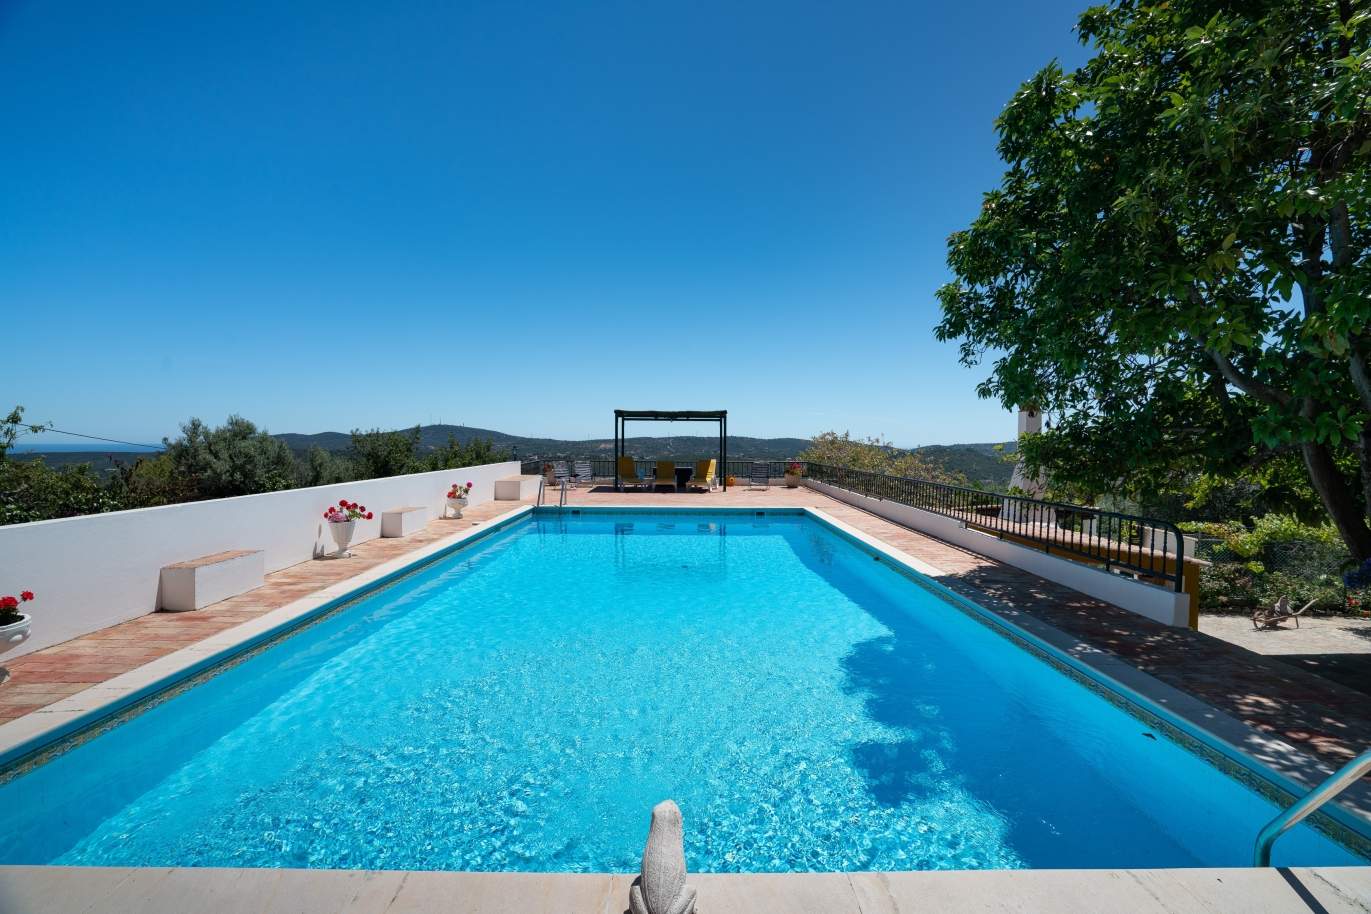 Venda de moradia rústica com piscina e jardim, em São Brás de Alportel_142878